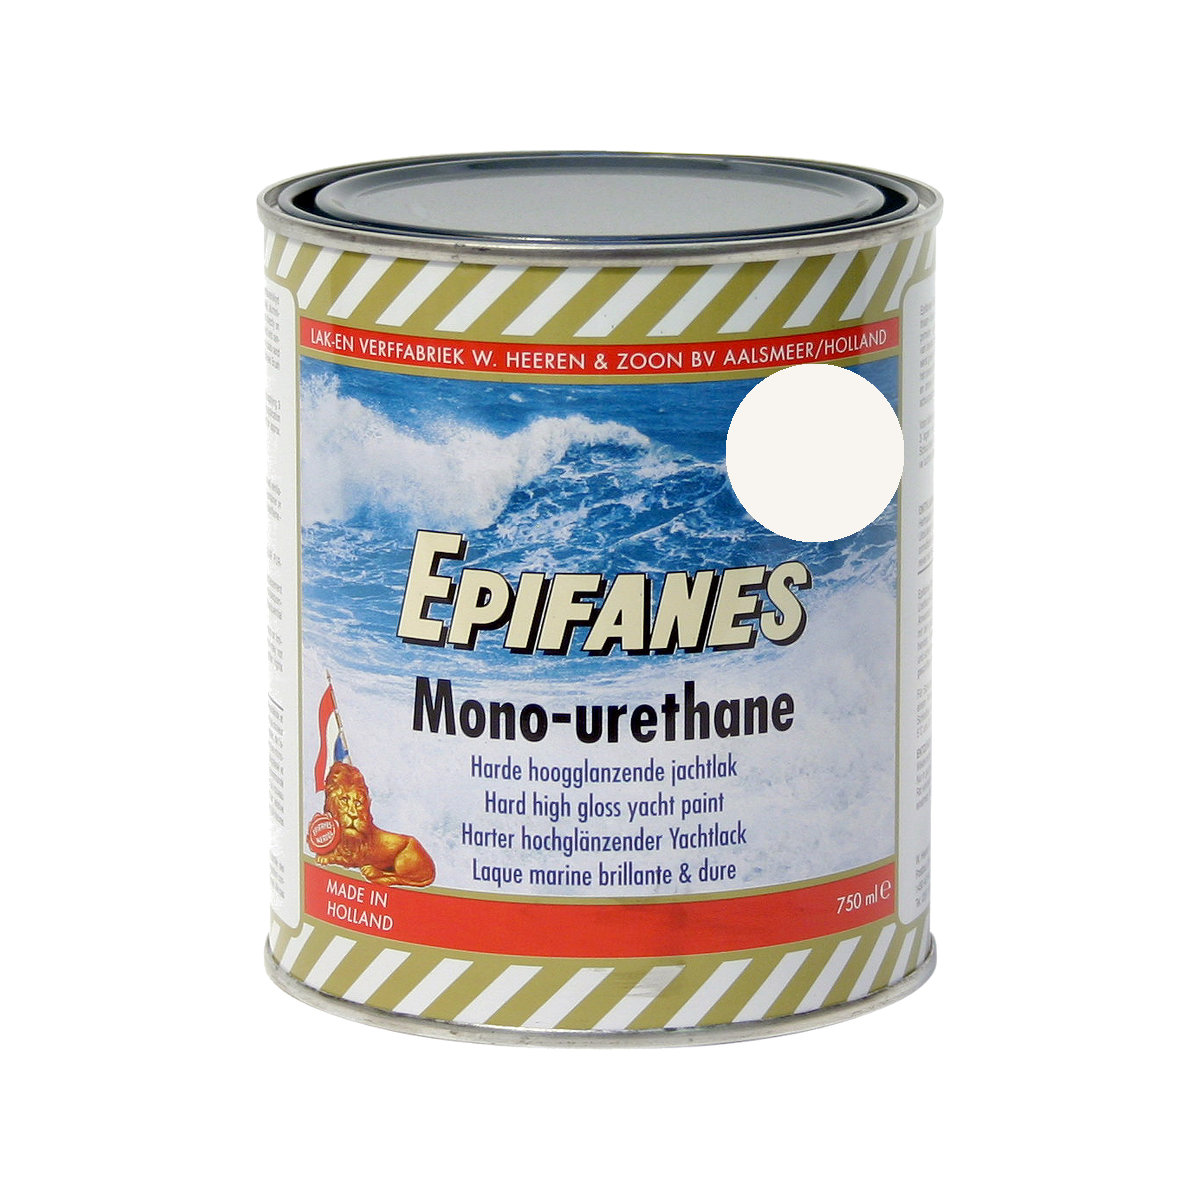 Epifanes mono-urethane jachtlak - arctisch wit 3248, 750ml